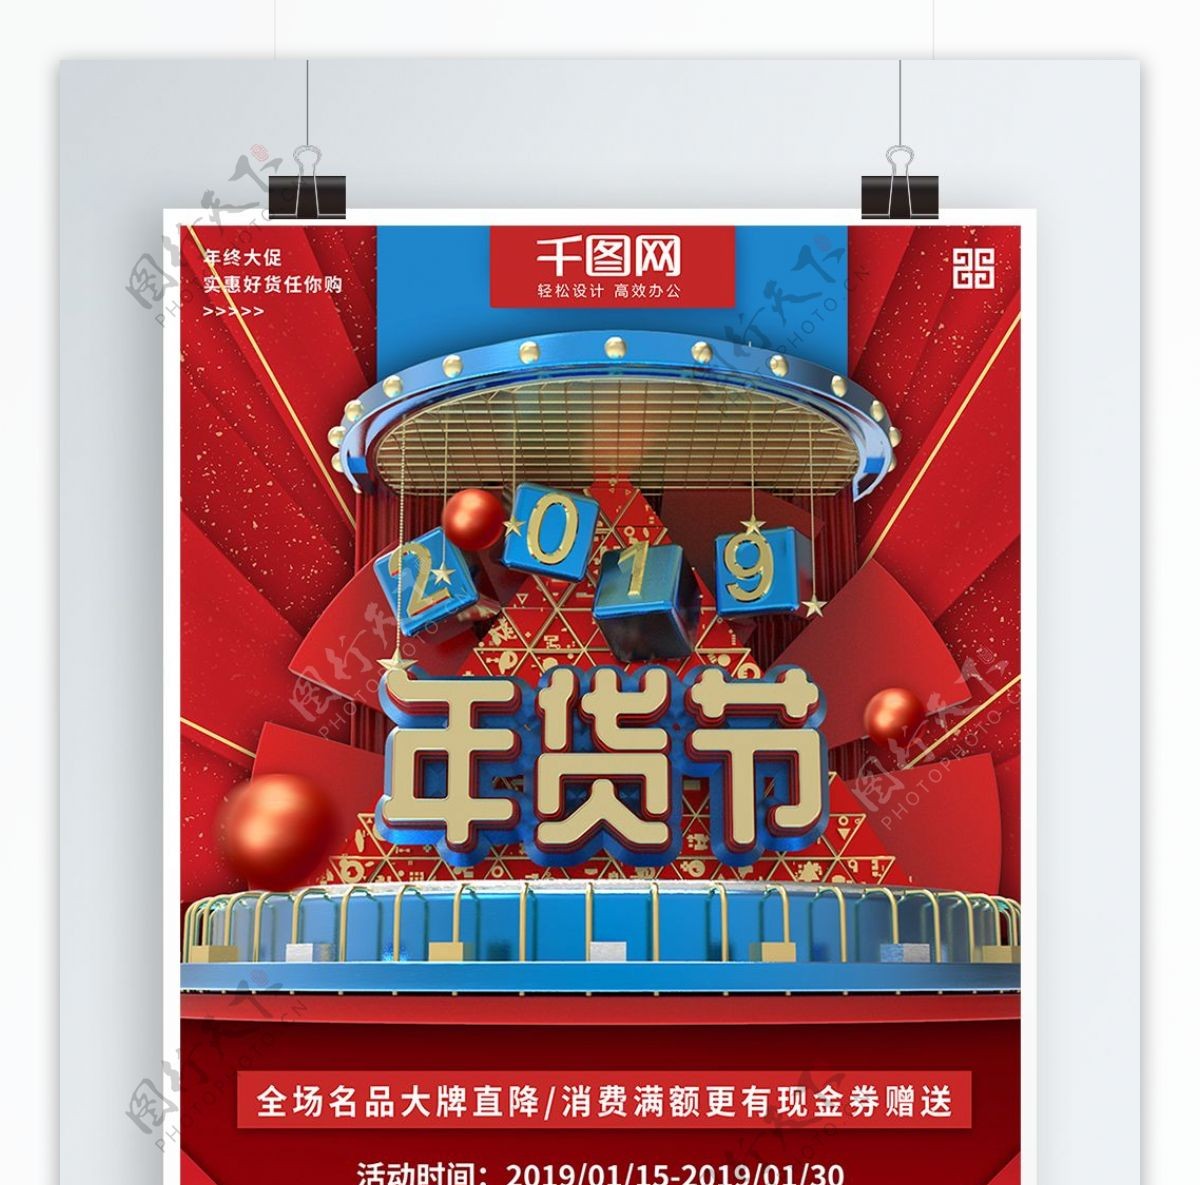 红蓝色大气立体年货节促销商业宣传海报